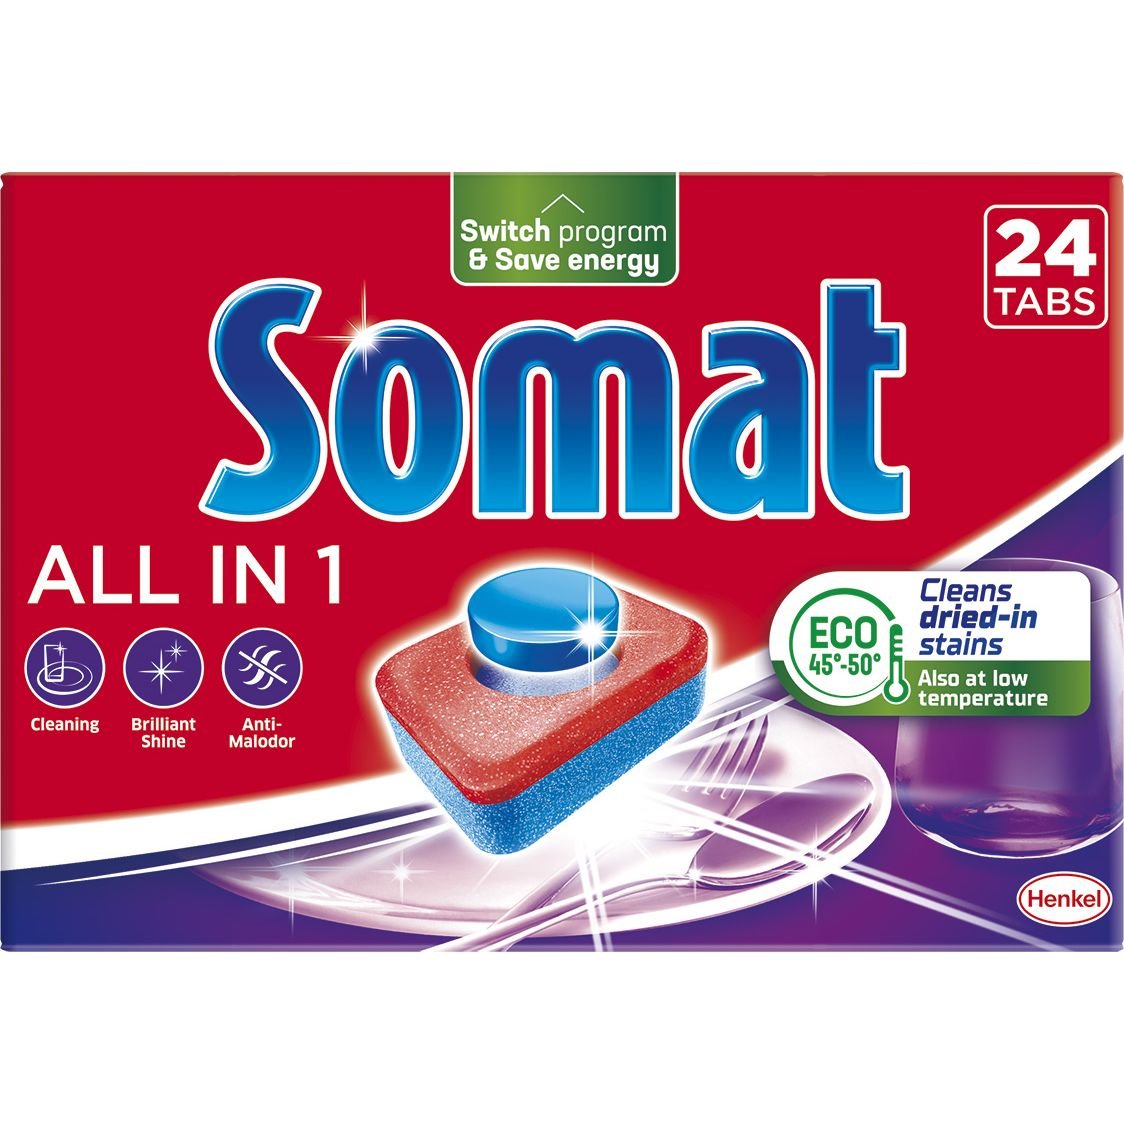 Капсулы для посудомоечной машины Somat Exellence All in one Все в 1 24 таблетки - фото 1